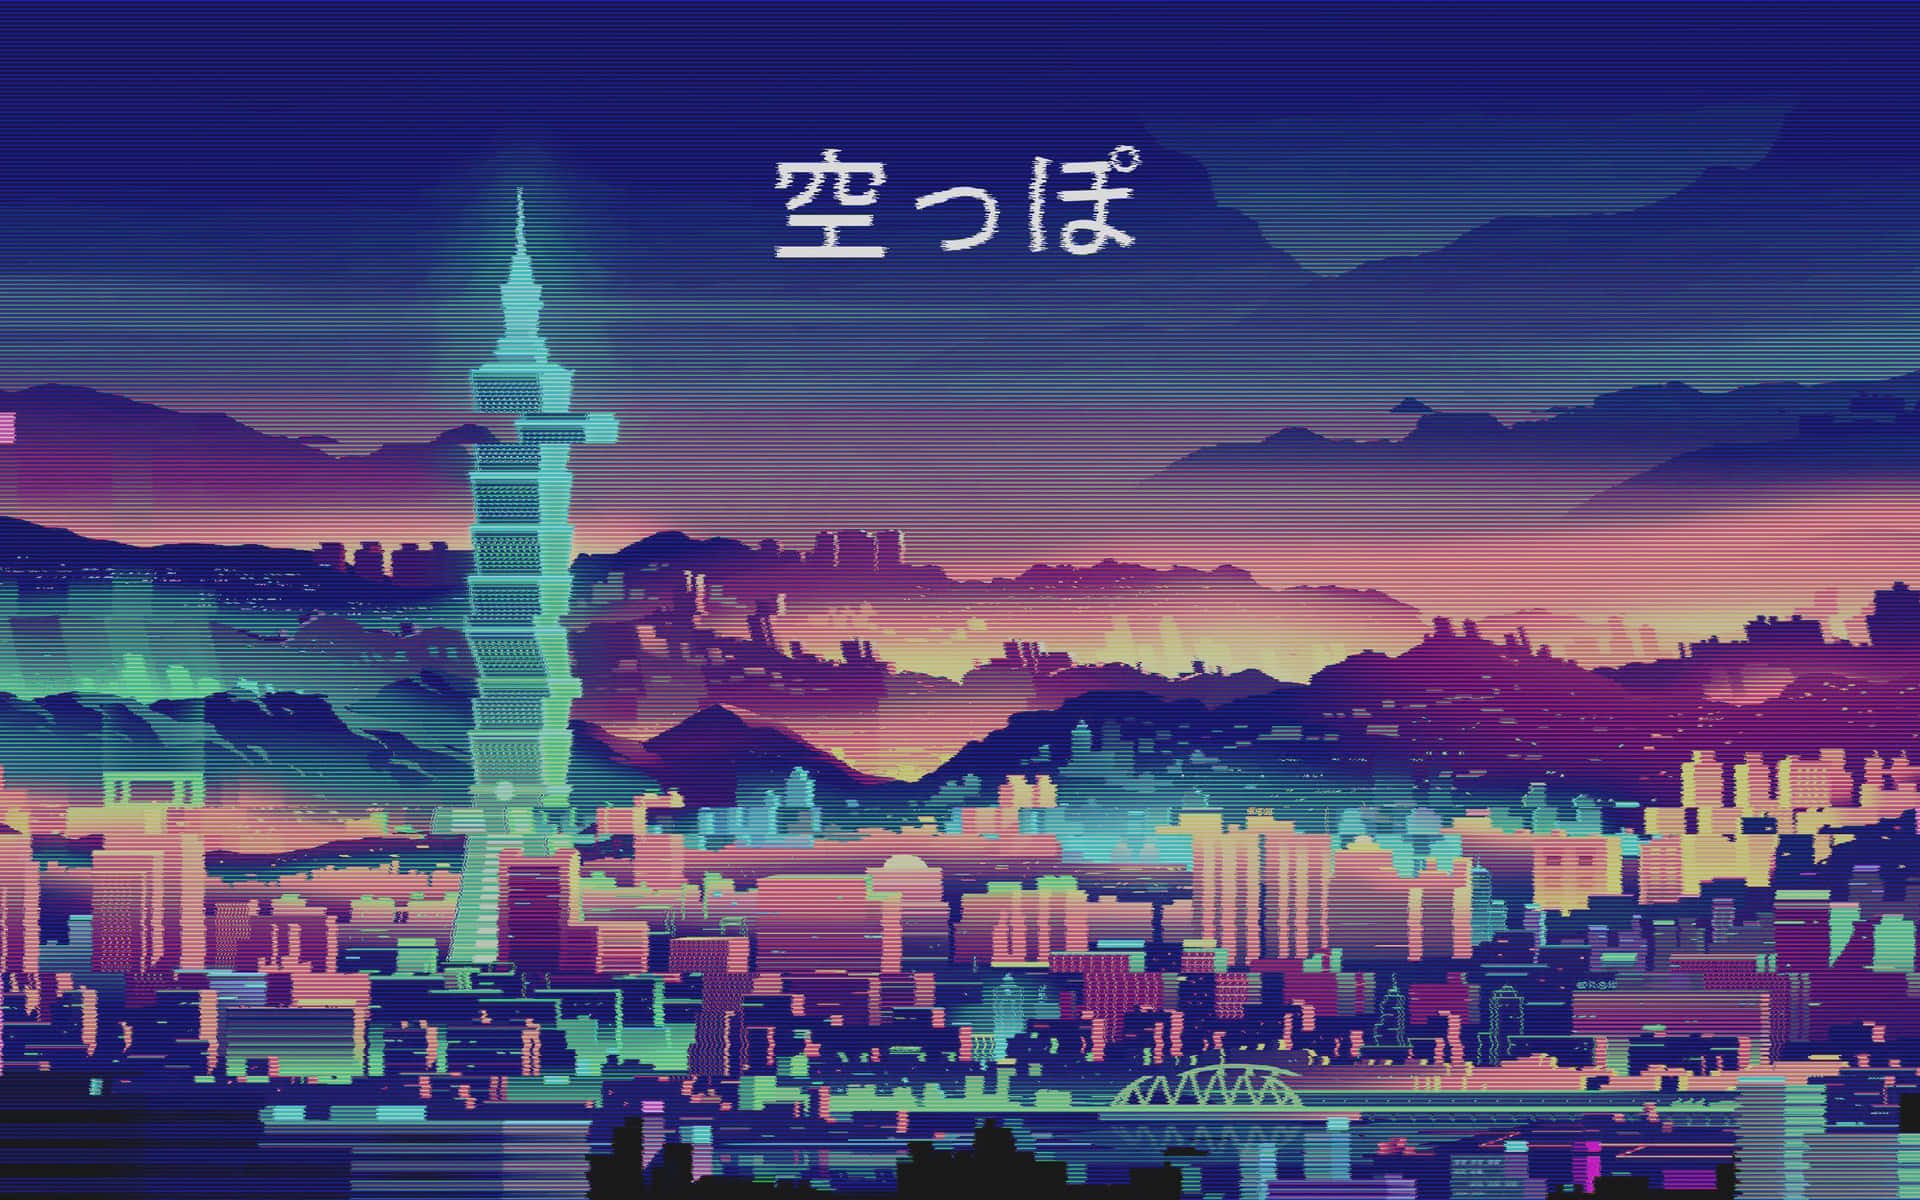 Papelde Parede De Computador Ou Celular Com Tema De Anime Dos Anos 90 Em Uma Cidade Japonesa. Papel de Parede